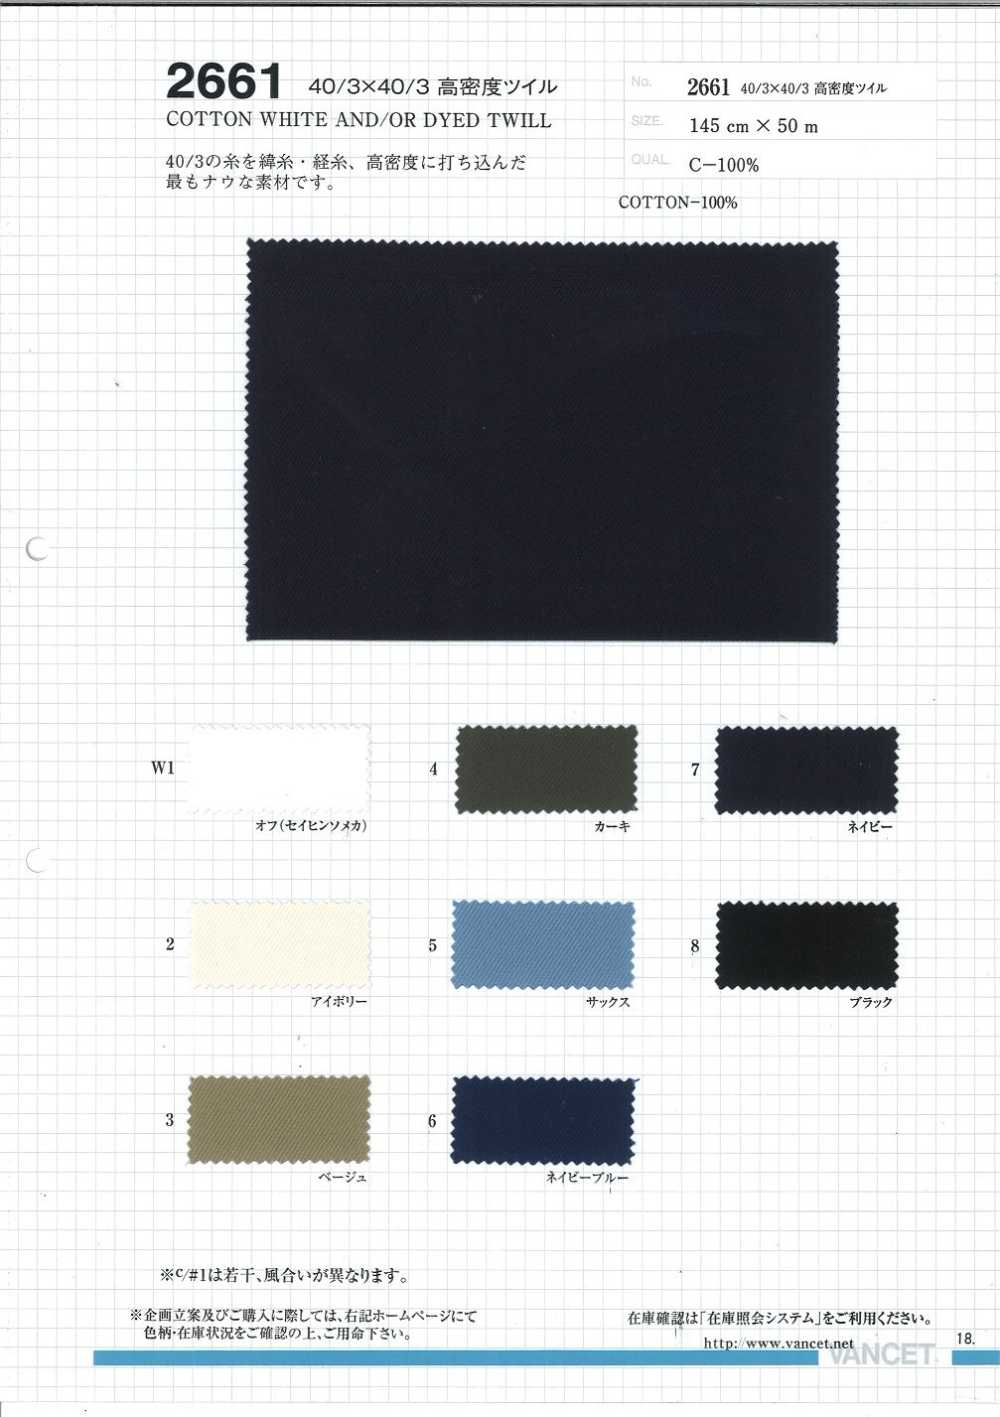 2661 Sarga De Alta Densidad 40/3 X 40/3[Fabrica Textil] VANCET